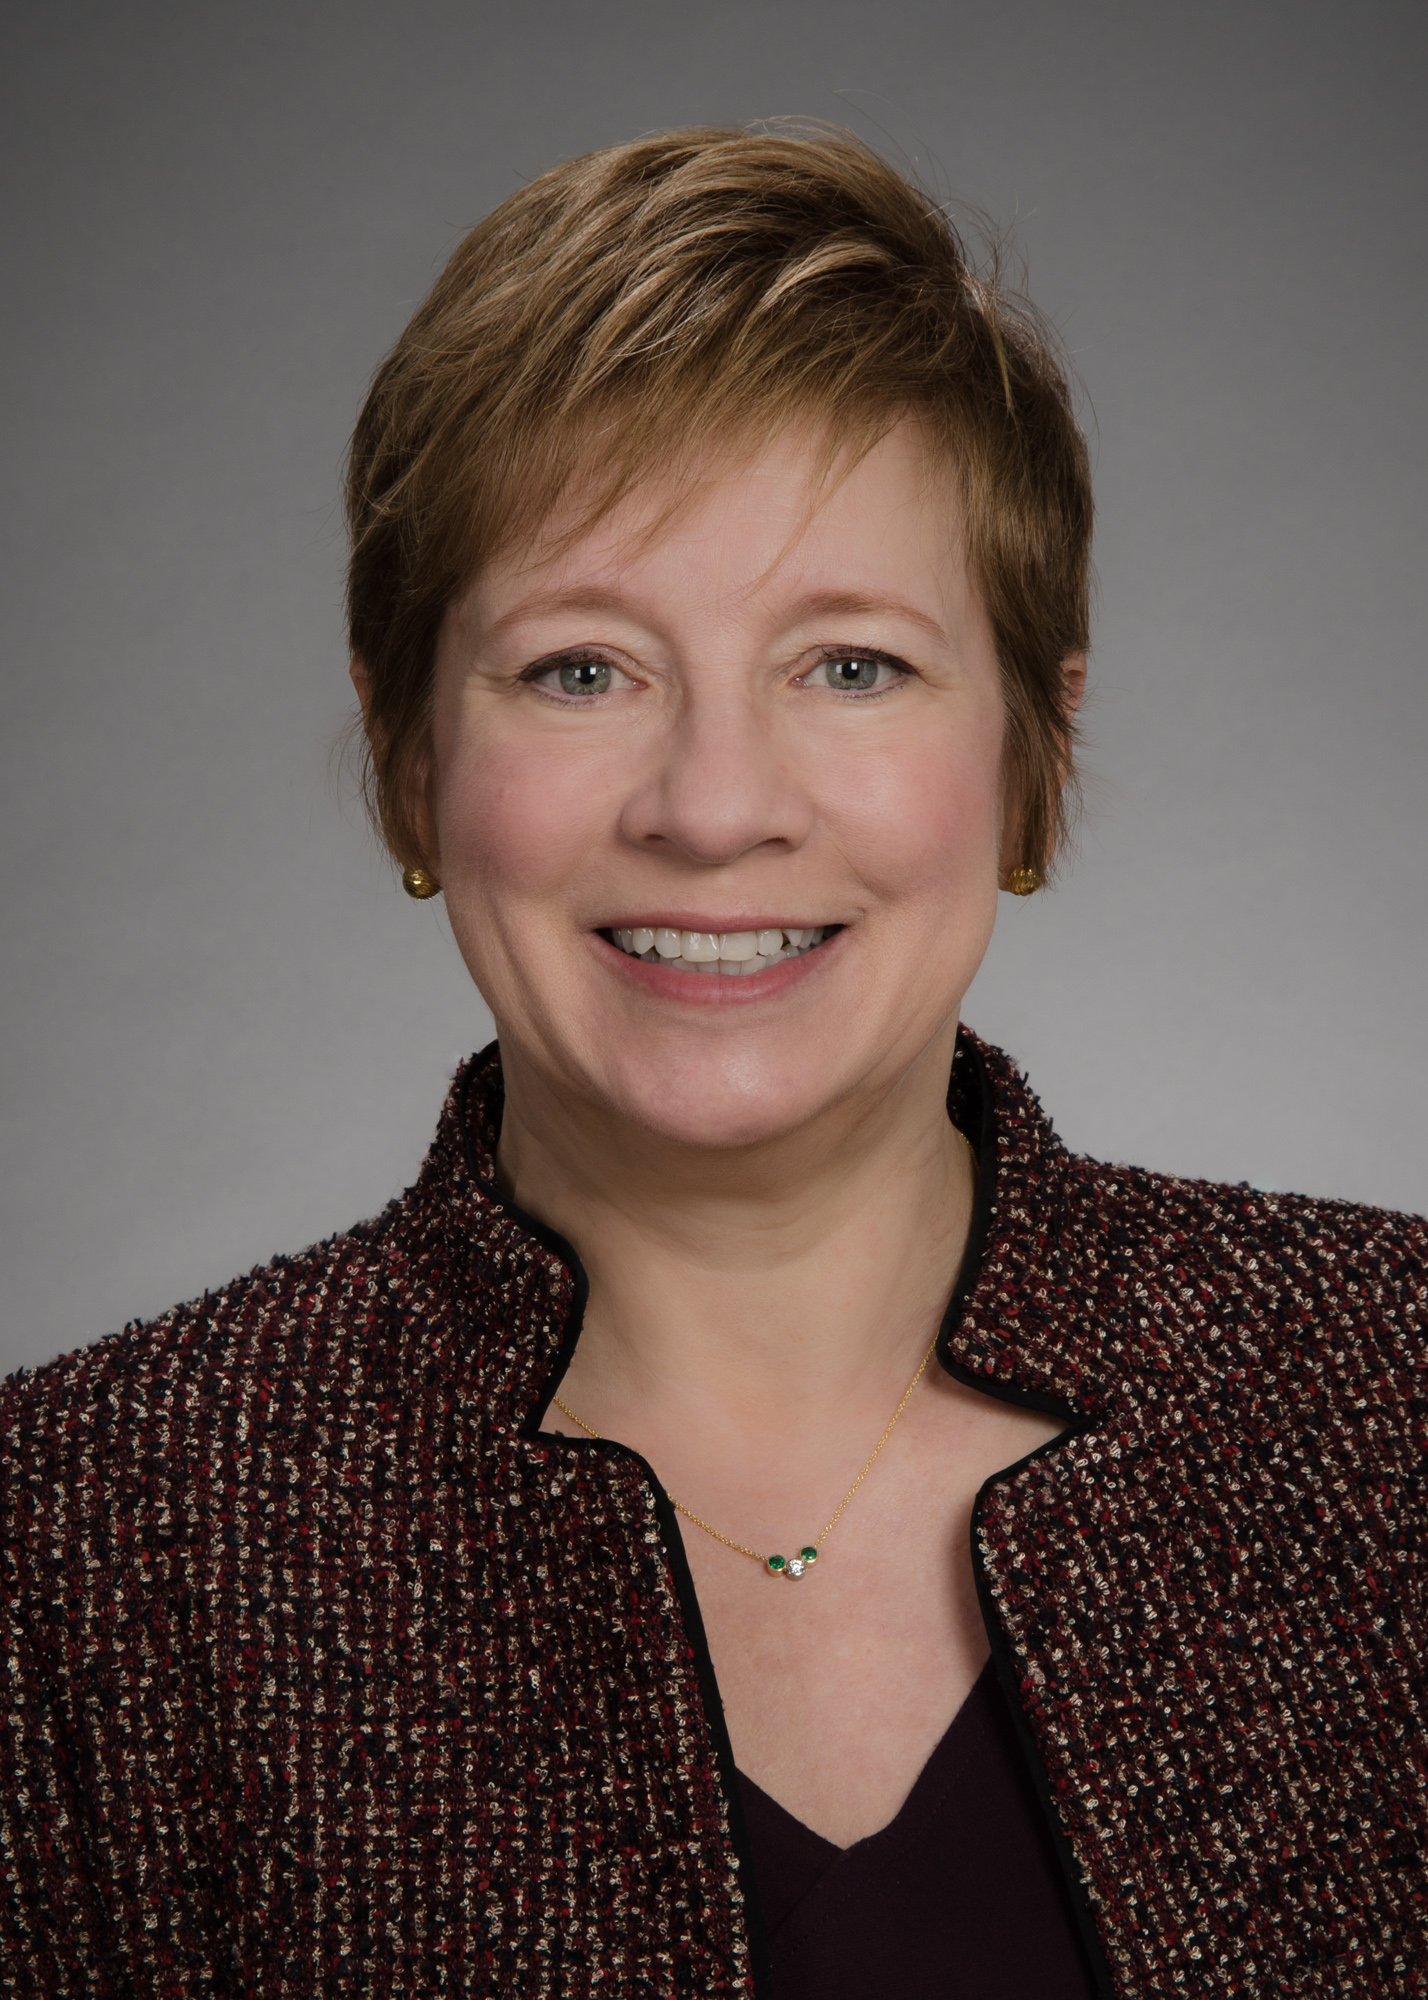 Dr. Gail Jarvik